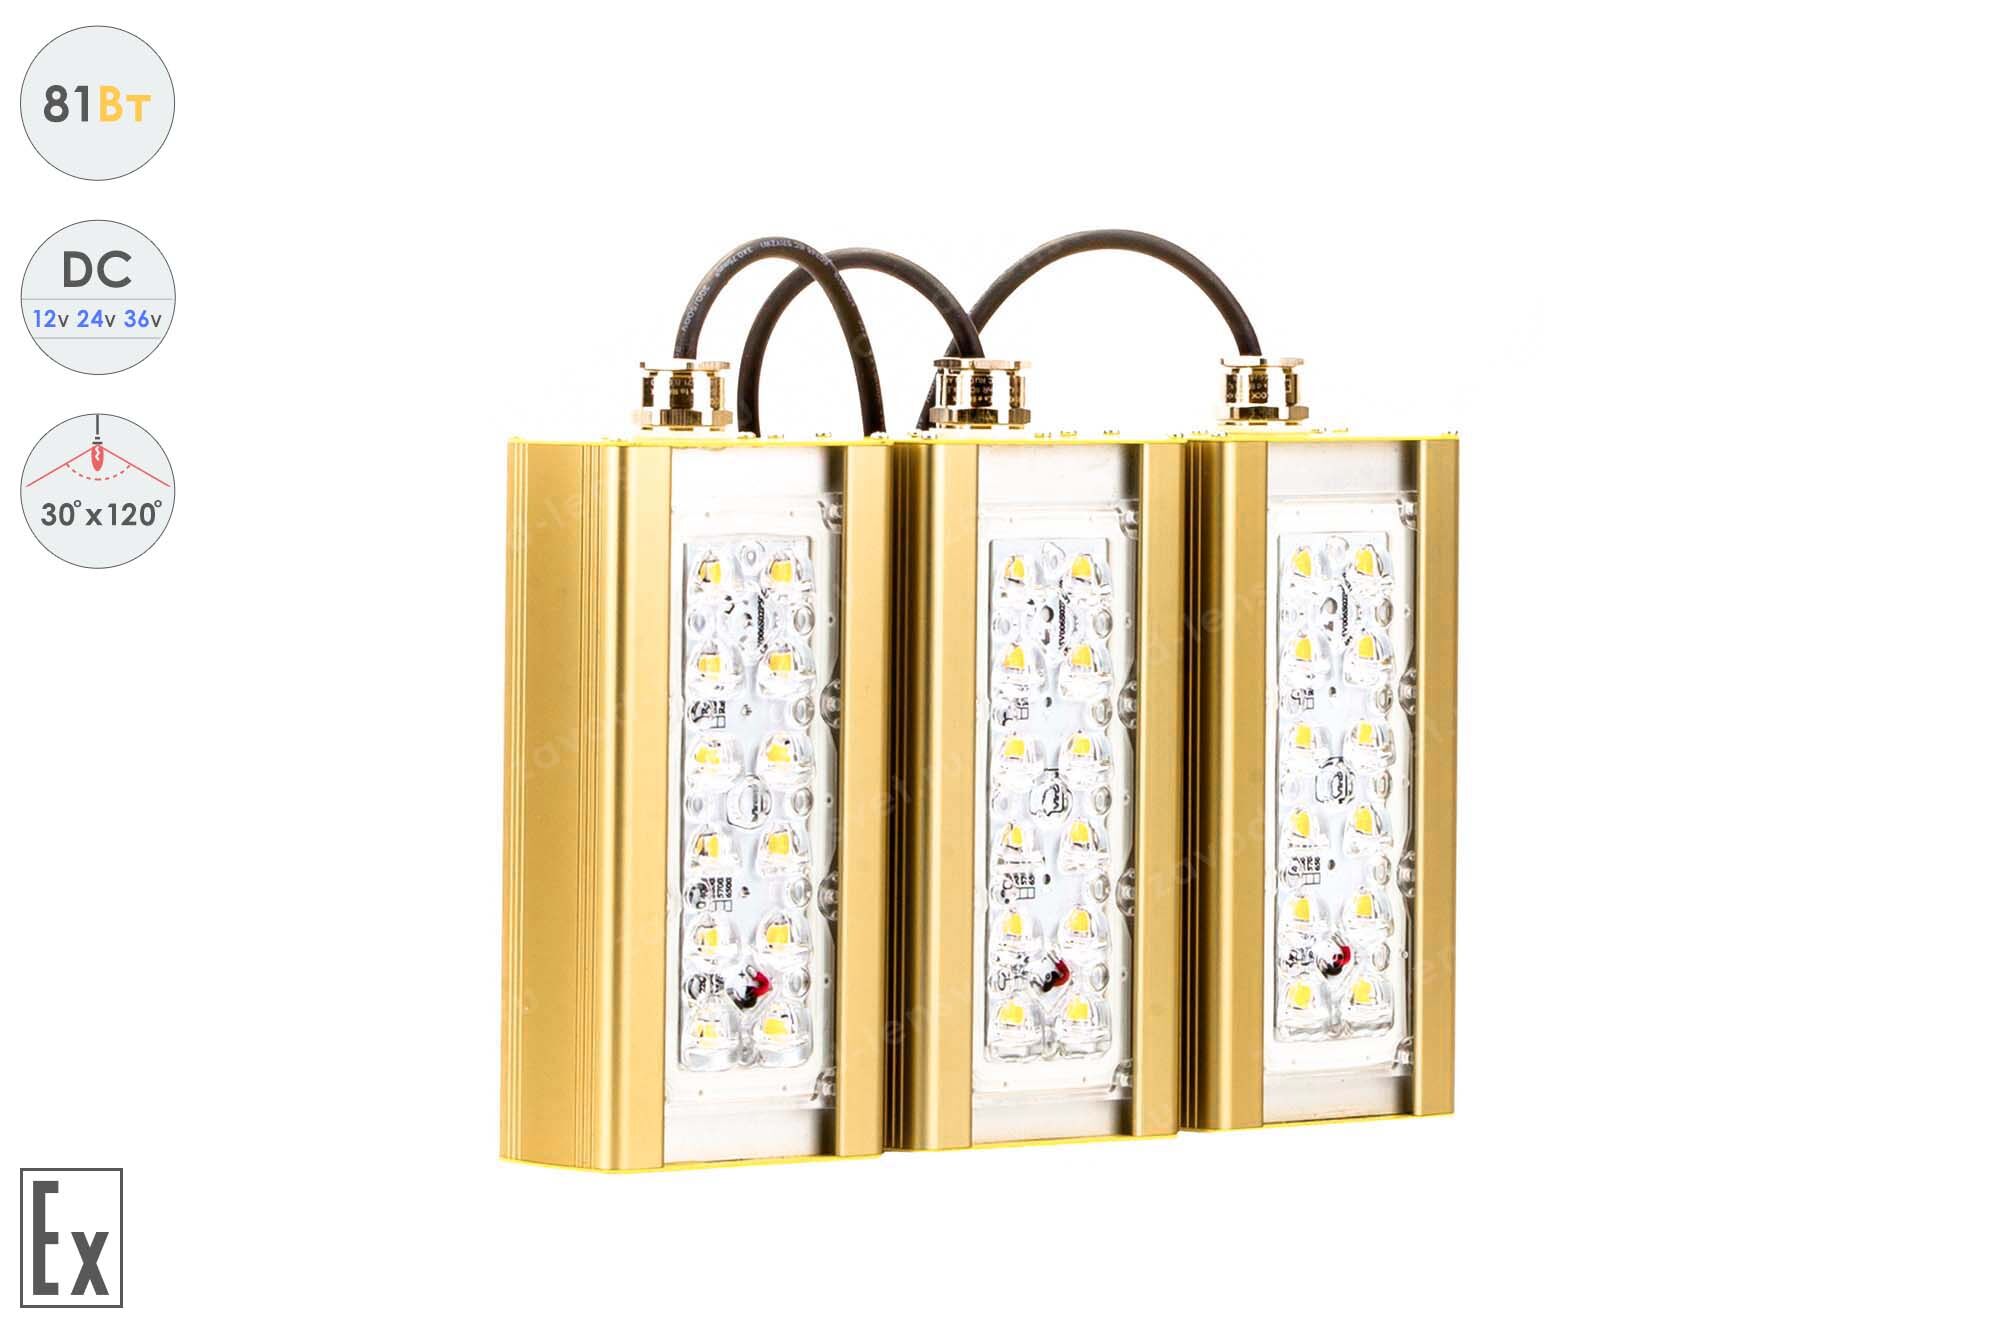 Светодиодный светильник Низковольтный Магистраль Взрывозащищенная GOLD, консоль K-3, 81 Вт, 30X120°